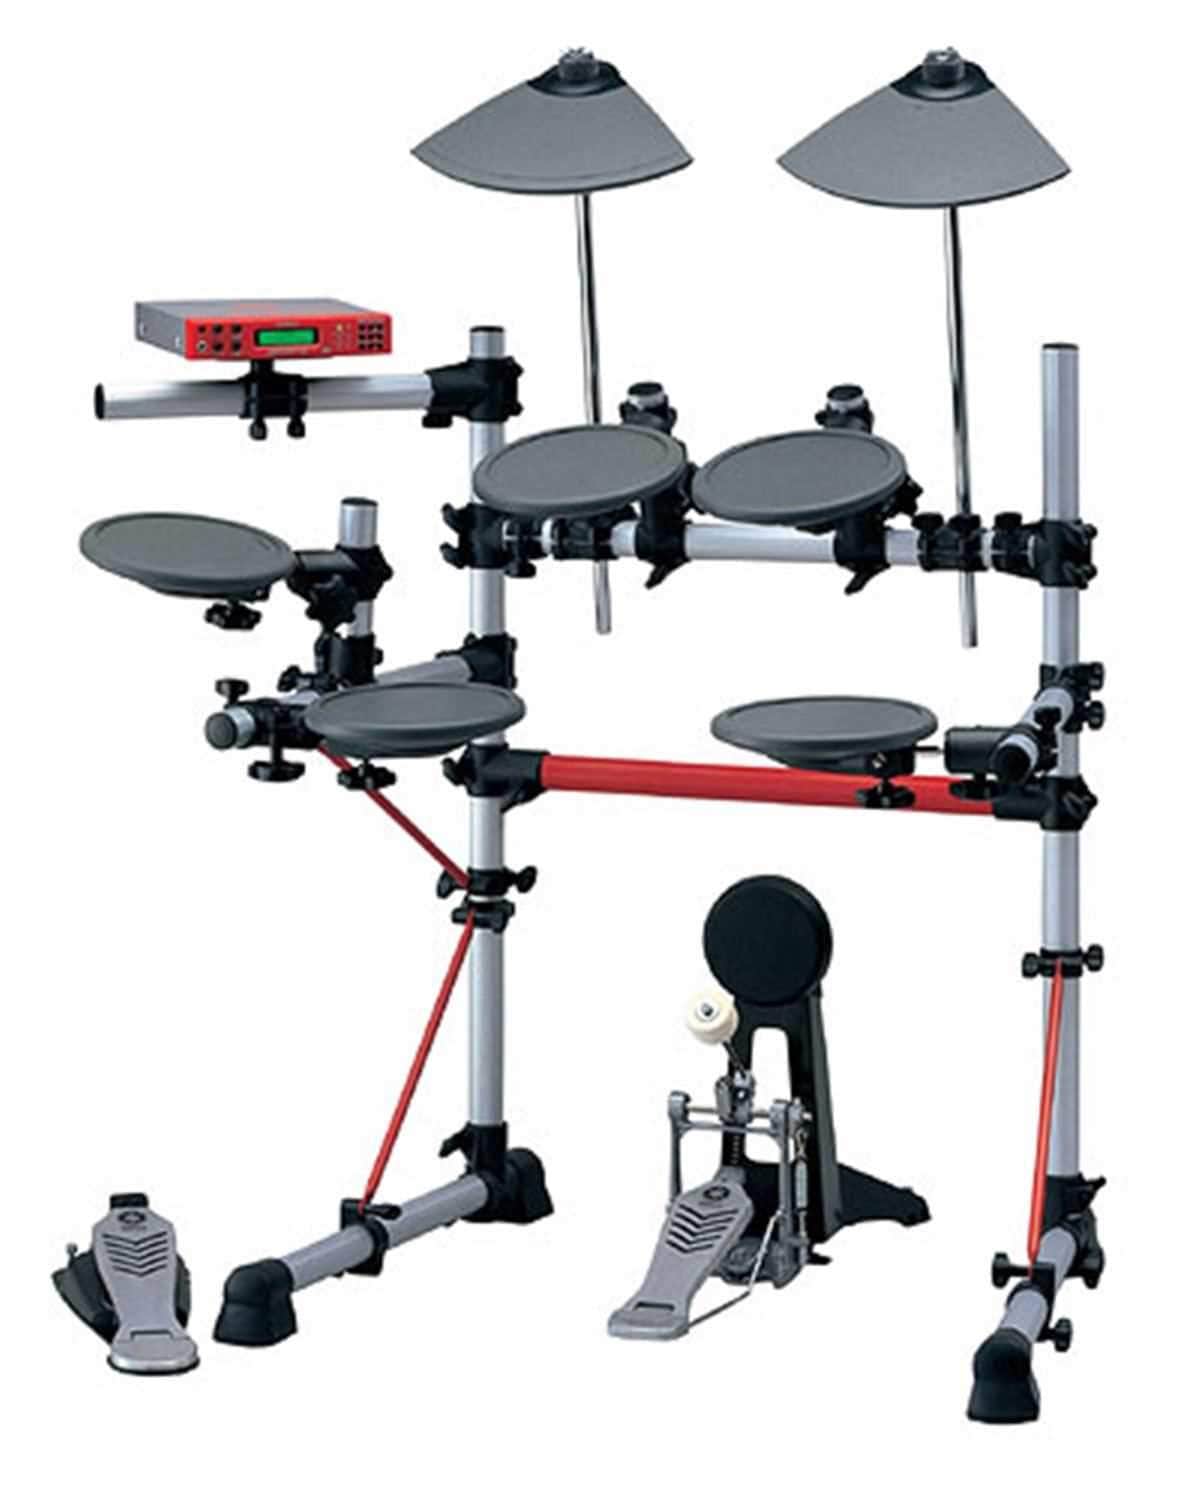 Yamaha DTXPRESS Iii Electronic Drum Kit / Set - ProSound and Stage Lighting